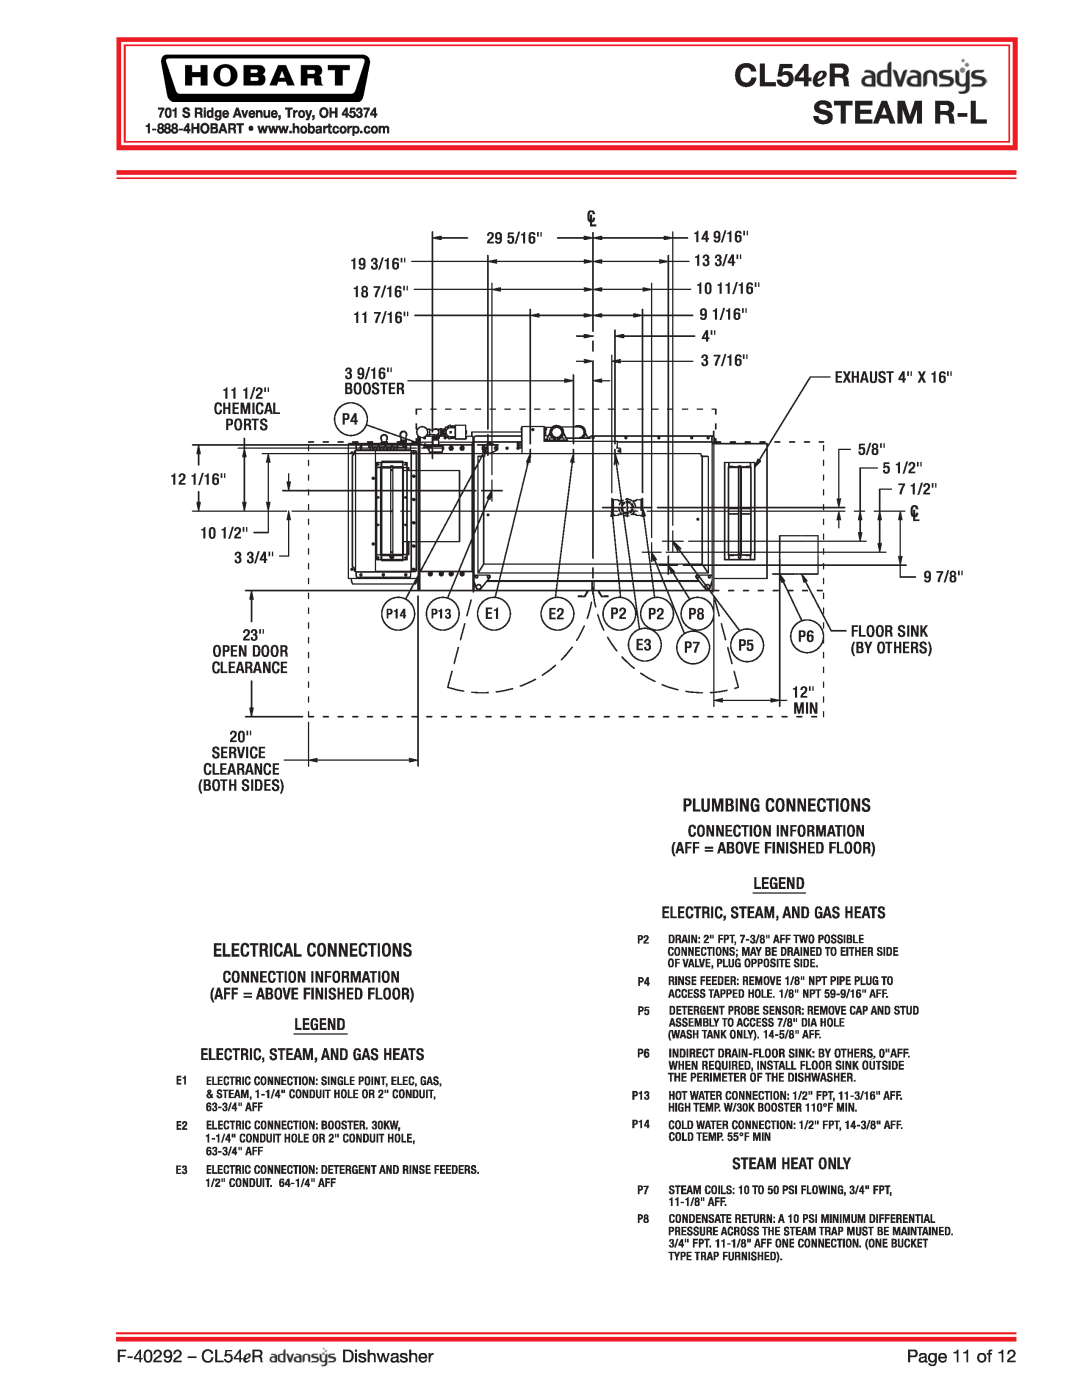 Hobart CL54ER dimensions CL54eR STEAM R-L, F-40292- CL54eR, Dishwasher, Page 11 of 